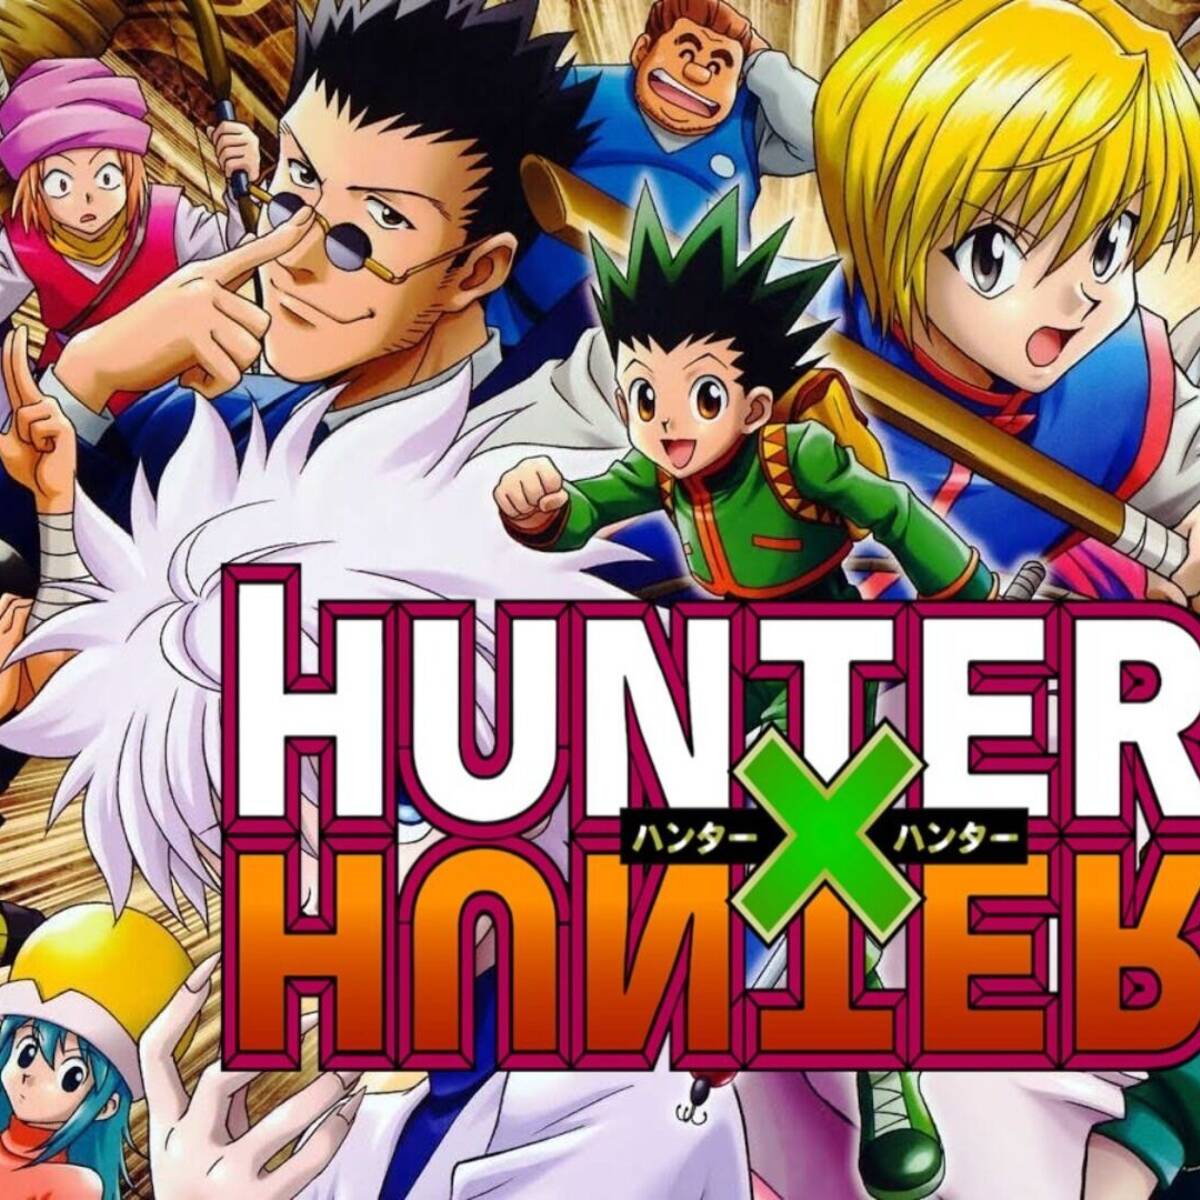 Hunter x Hunter: ¿habrá otra temporada del anime en Crunchyroll o Netflix?, TVMAS